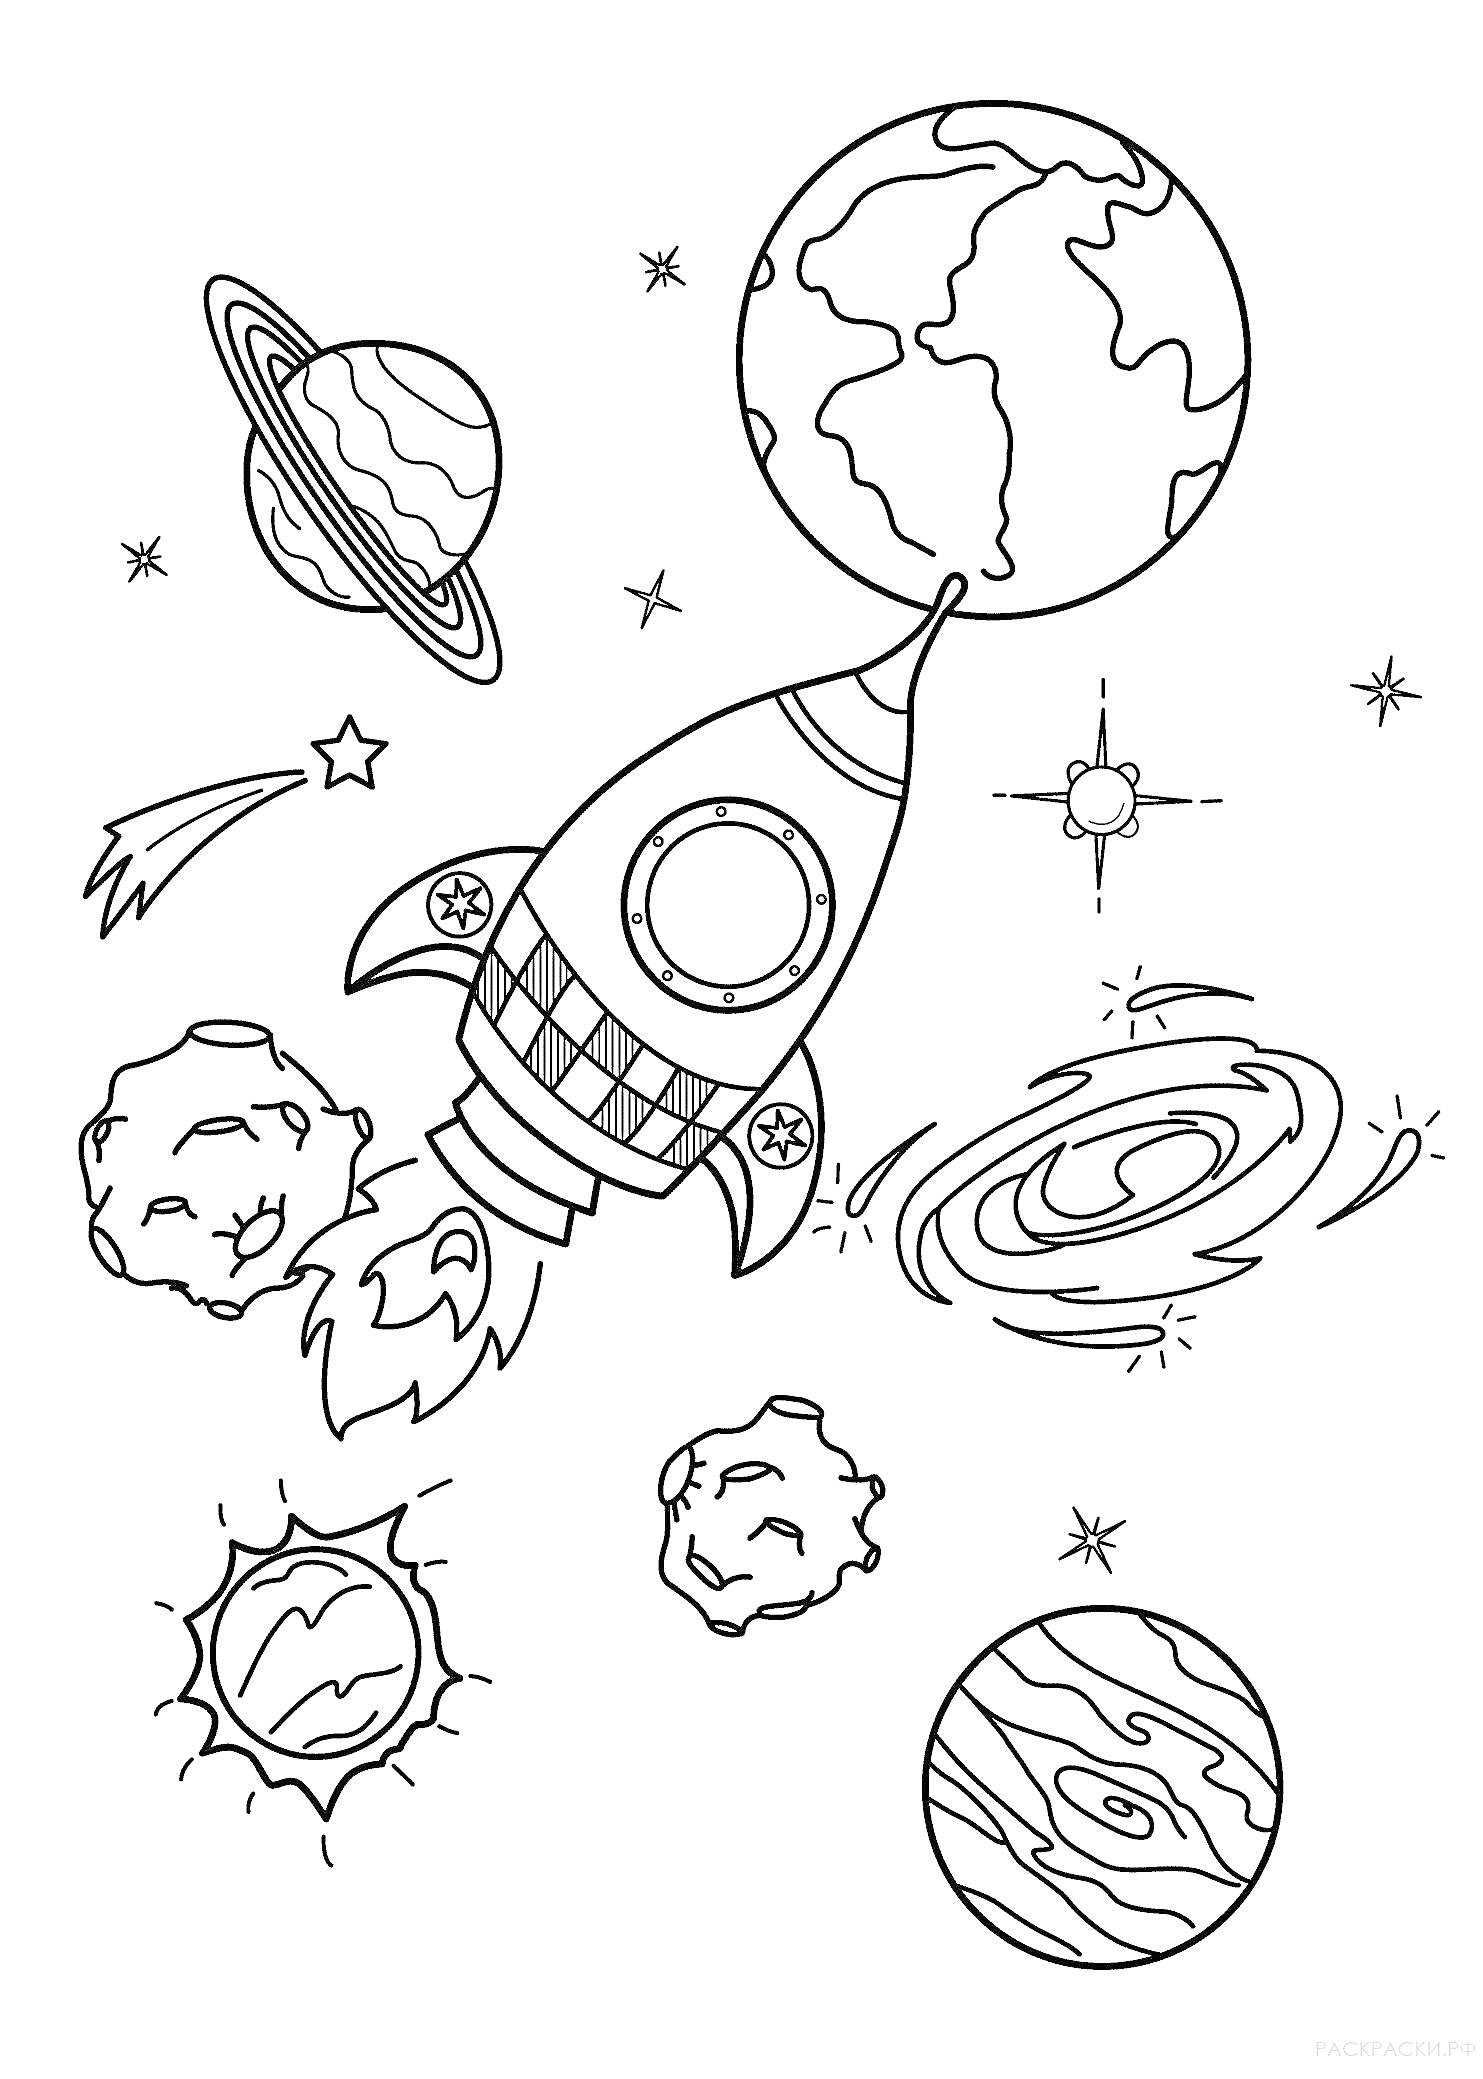 Космический корабль с ракетой в космосе, вокруг которой планеты, звёзды, комета, астероиды и галактики